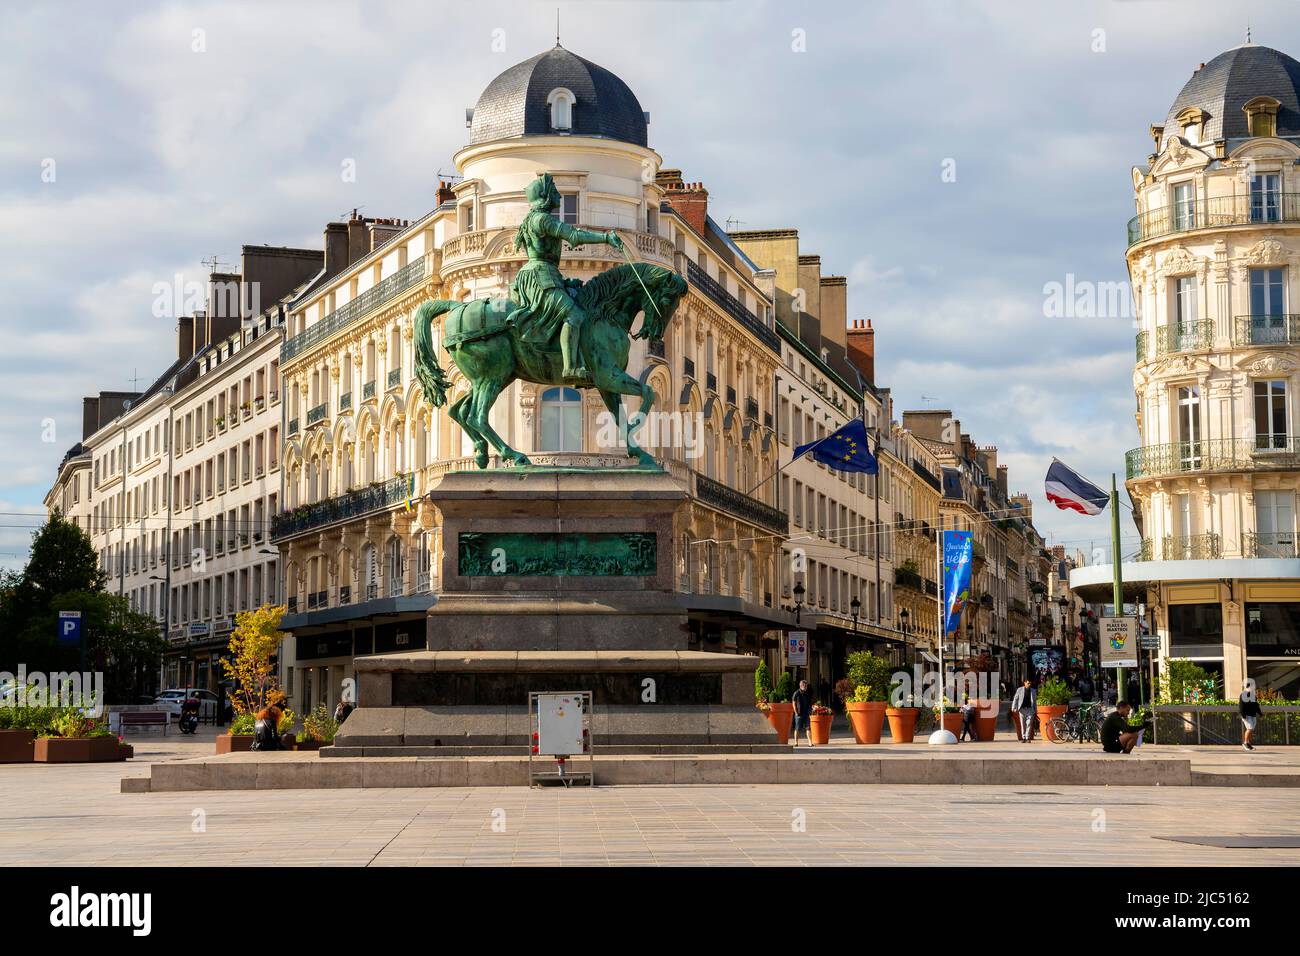 La statue équestre de Jeanne d'Arc sur la place du Martroi est un monument en bronze réalisé par Denis Foyatier en 1855. Orléans, Centre-Val de Loire région de Banque D'Images